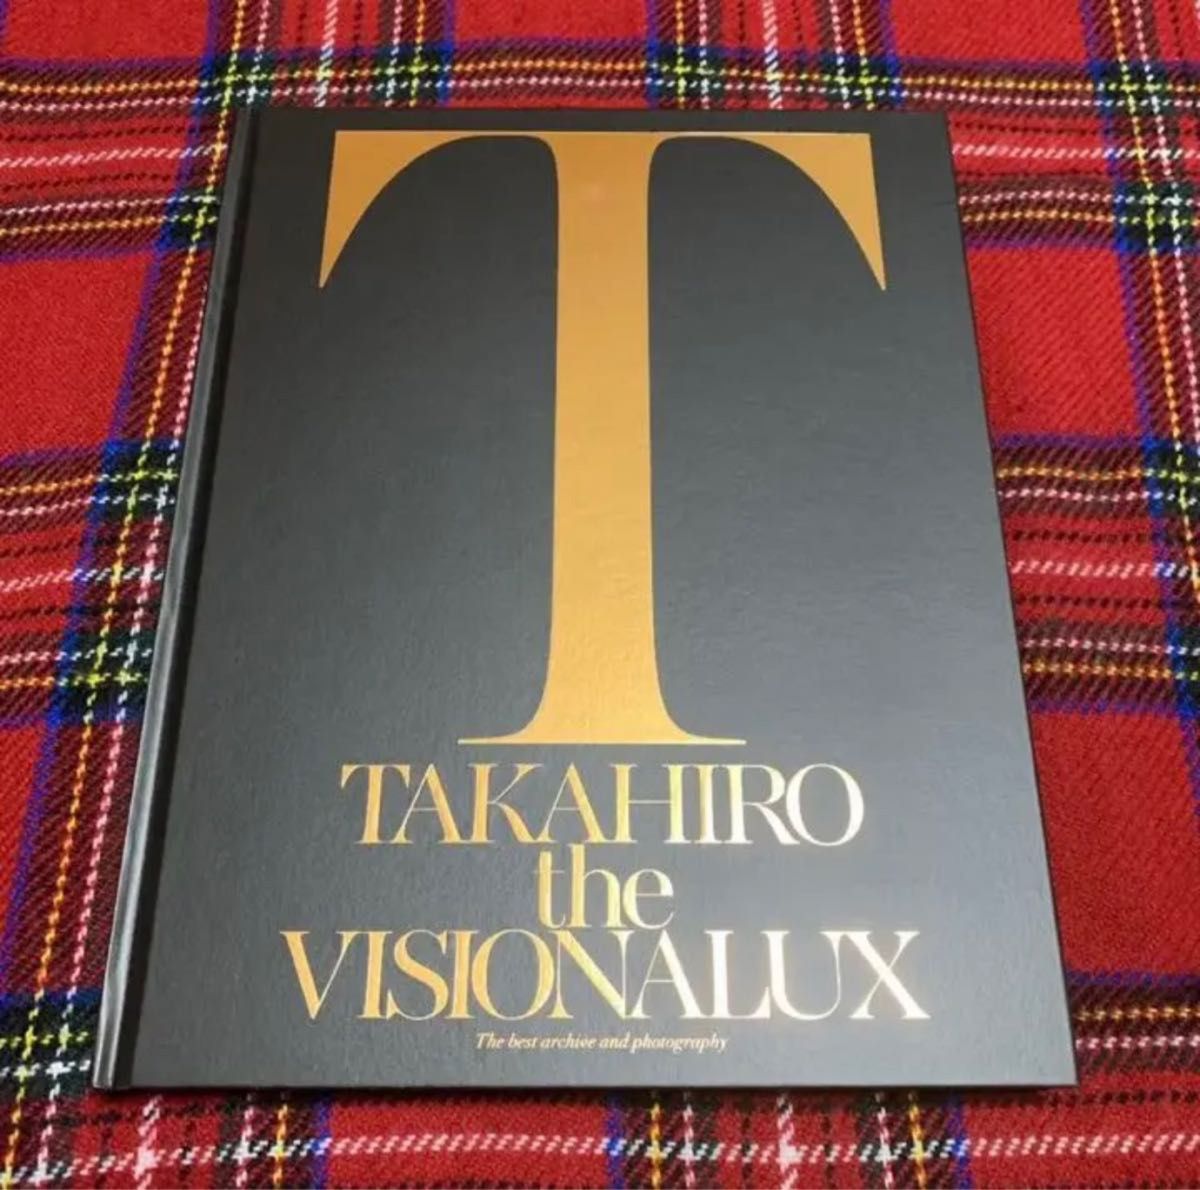 「the VISIONALUX」TAKAHIRO